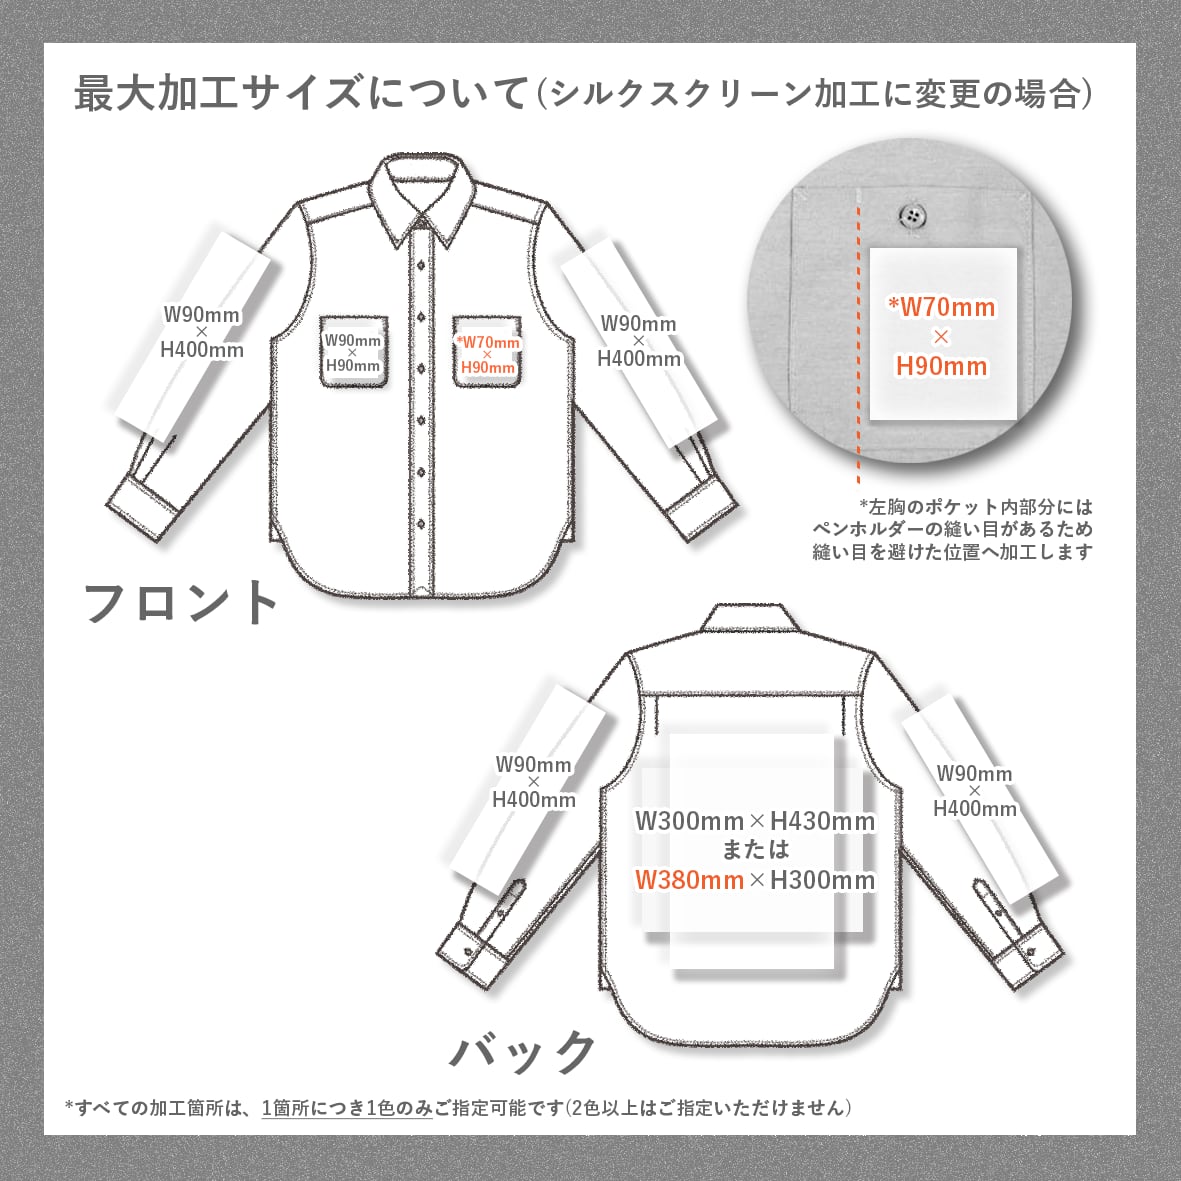 REDKAP レッドキャップ 4.25 oz 長袖ワークシャツ (品番RDKP-S0014)